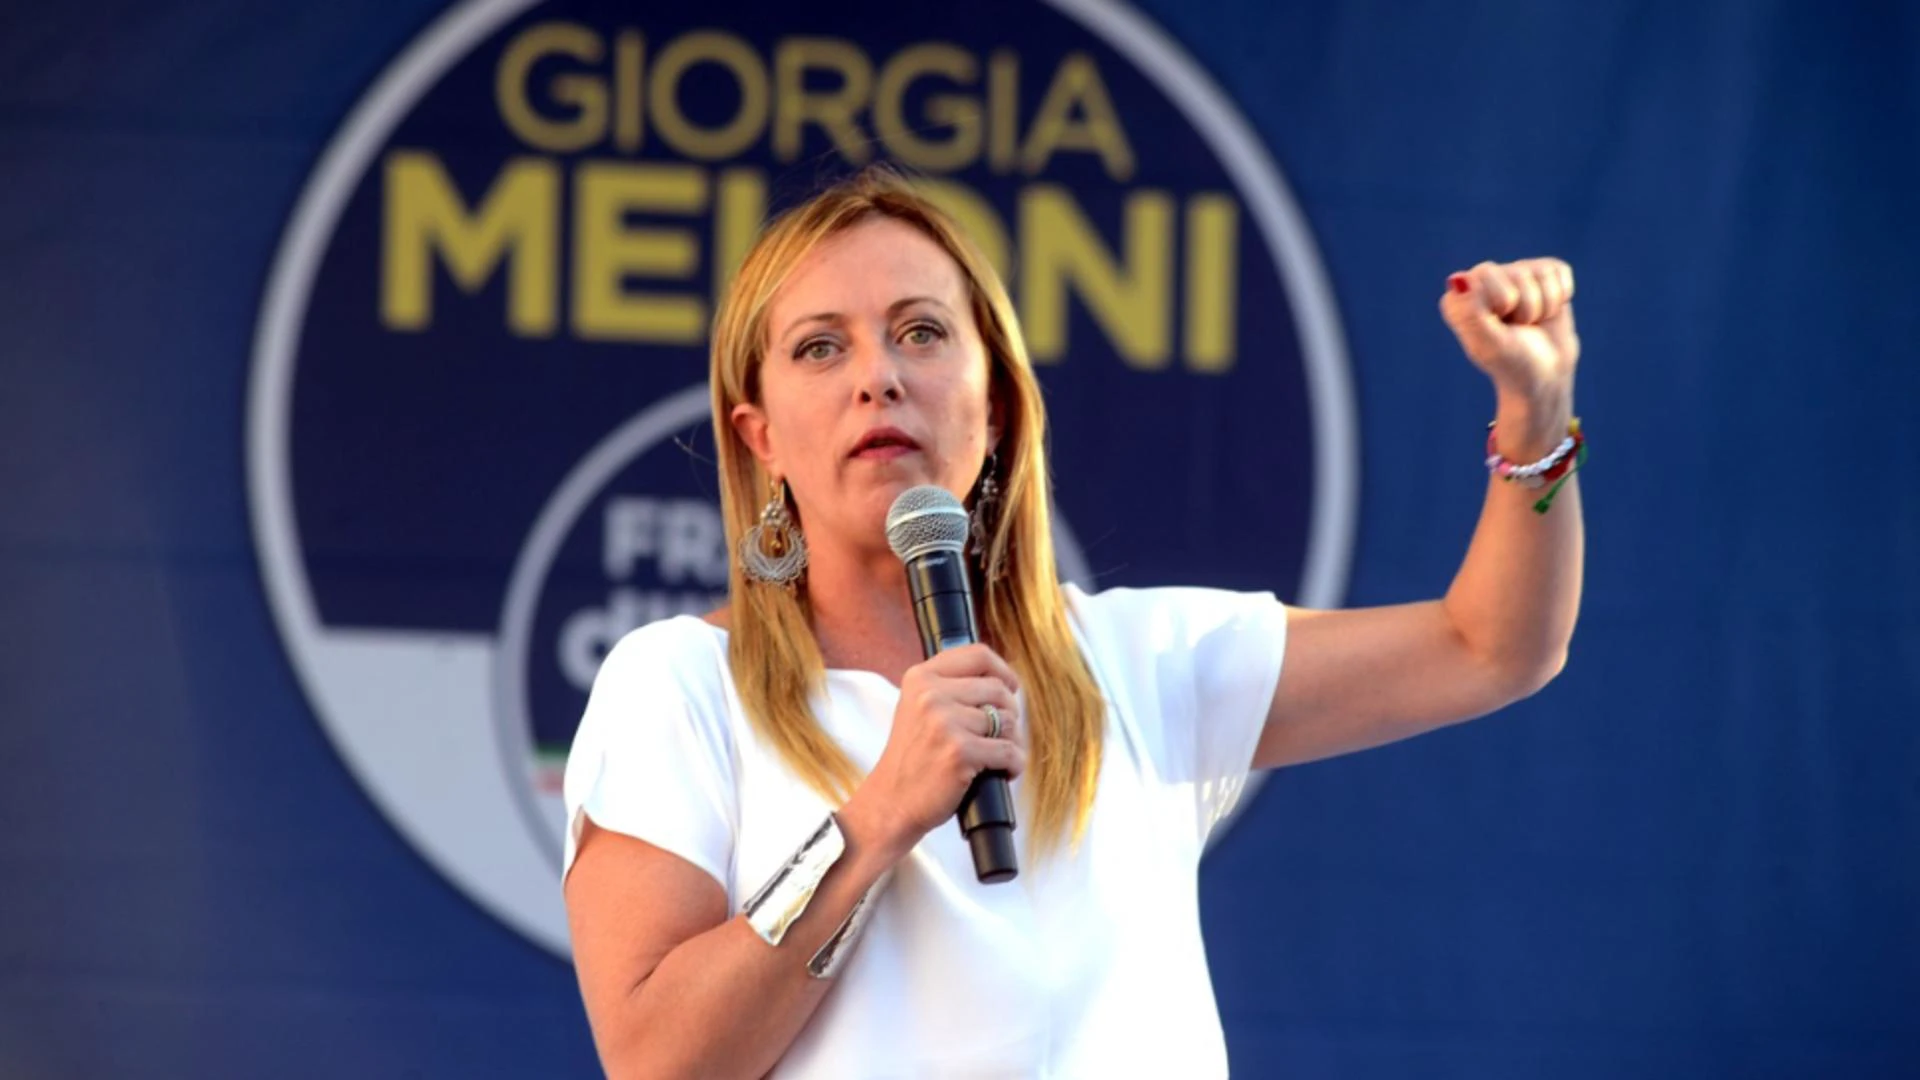 Che progetti ha Giorgia Meloni per l’Italia?  La politica migratoria ed energetica ne è solo una parte